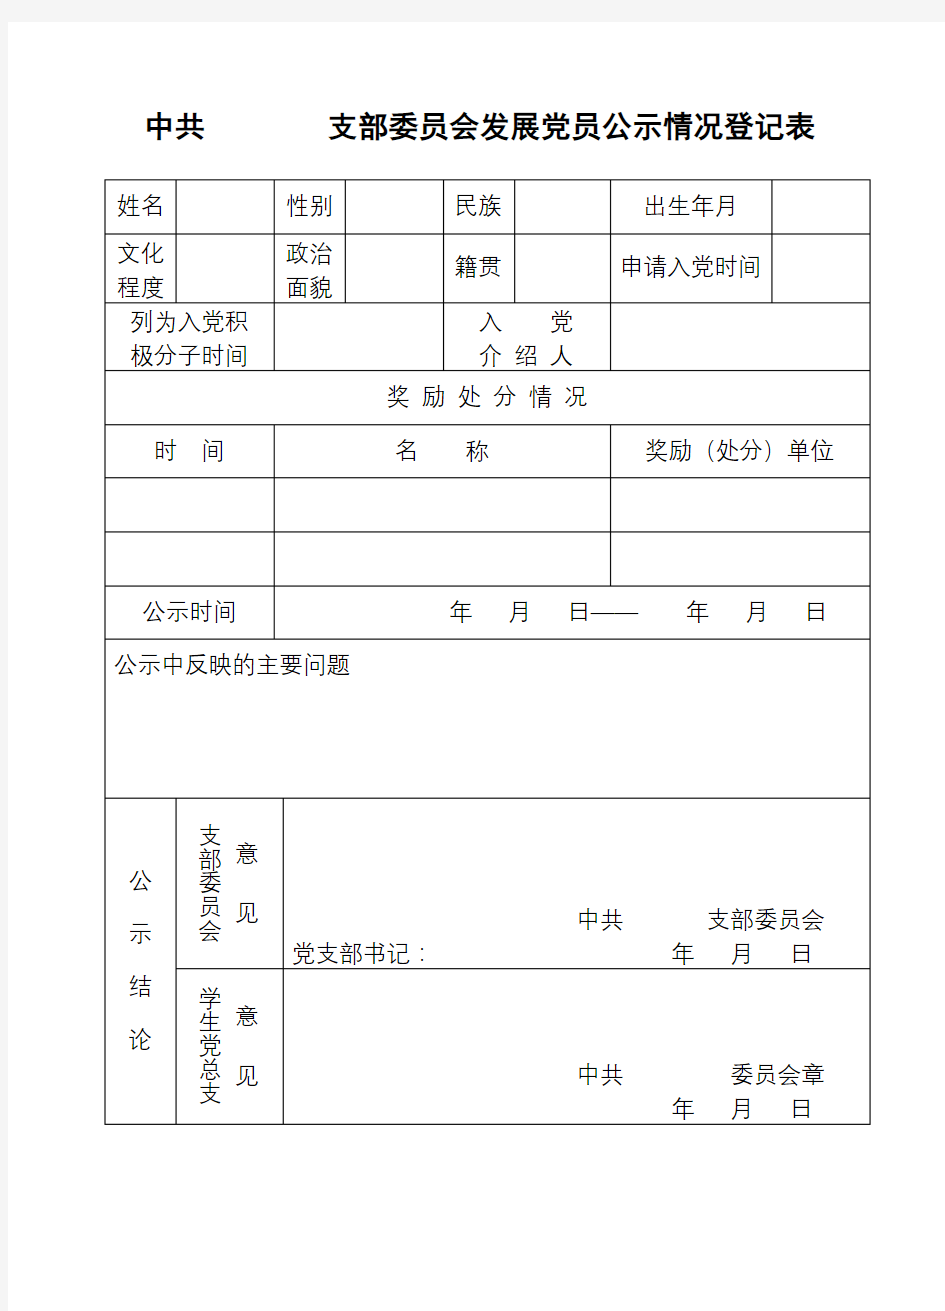 中共支部委员会发展党员公示情况登记表【模板】